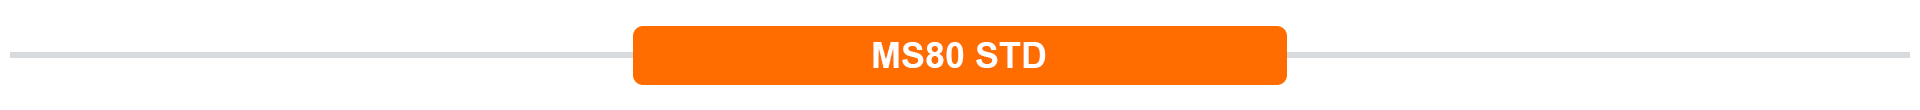 MS80 STD